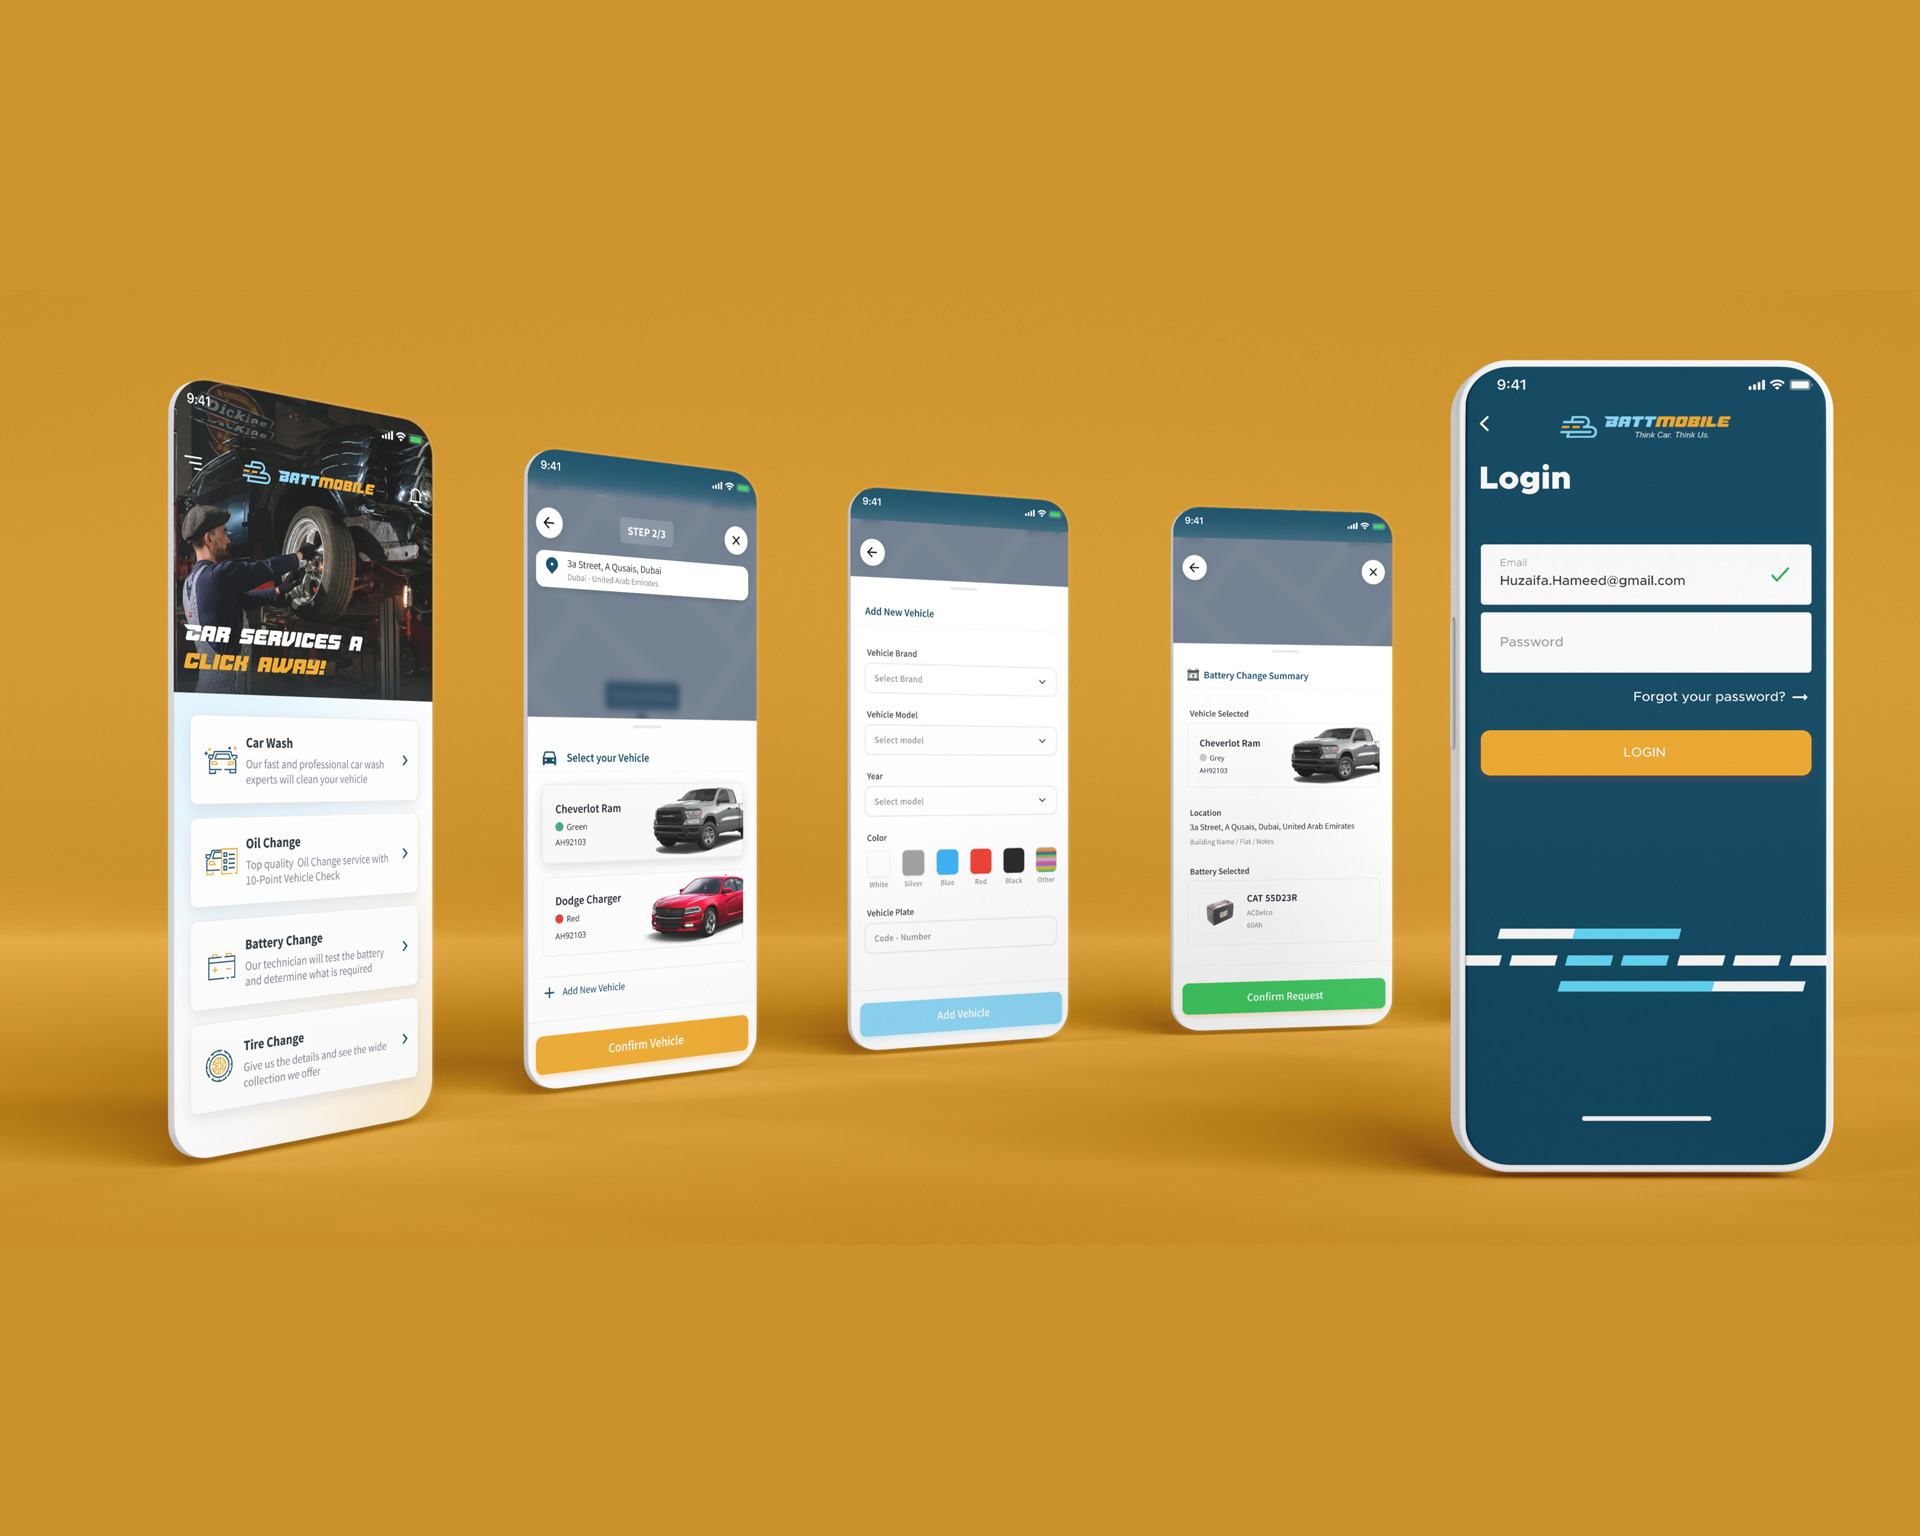 Battmobile app screens